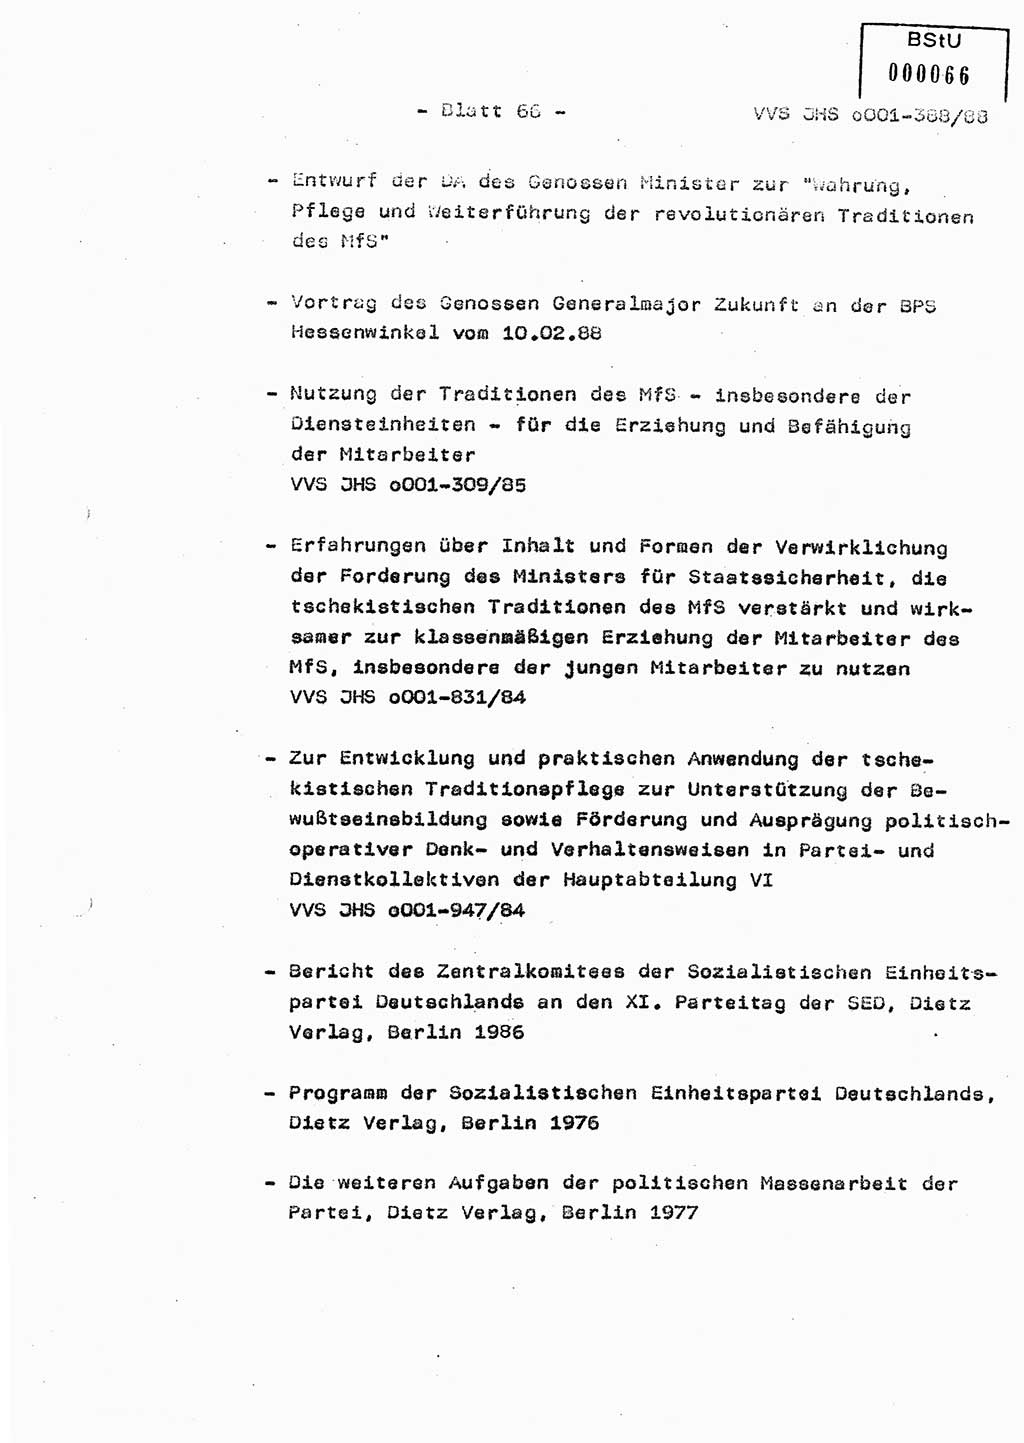 Diplomarbeit Hauptmann Heinz Brixel (Abt. ⅩⅣ), Ministerium für Staatssicherheit (MfS) [Deutsche Demokratische Republik (DDR)], Juristische Hochschule (JHS), Vertrauliche Verschlußsache (VVS) o001-388/88, Potsdam 1988, Blatt 66 (Dipl.-Arb. MfS DDR JHS VVS o001-388/88 1988, Bl. 66)